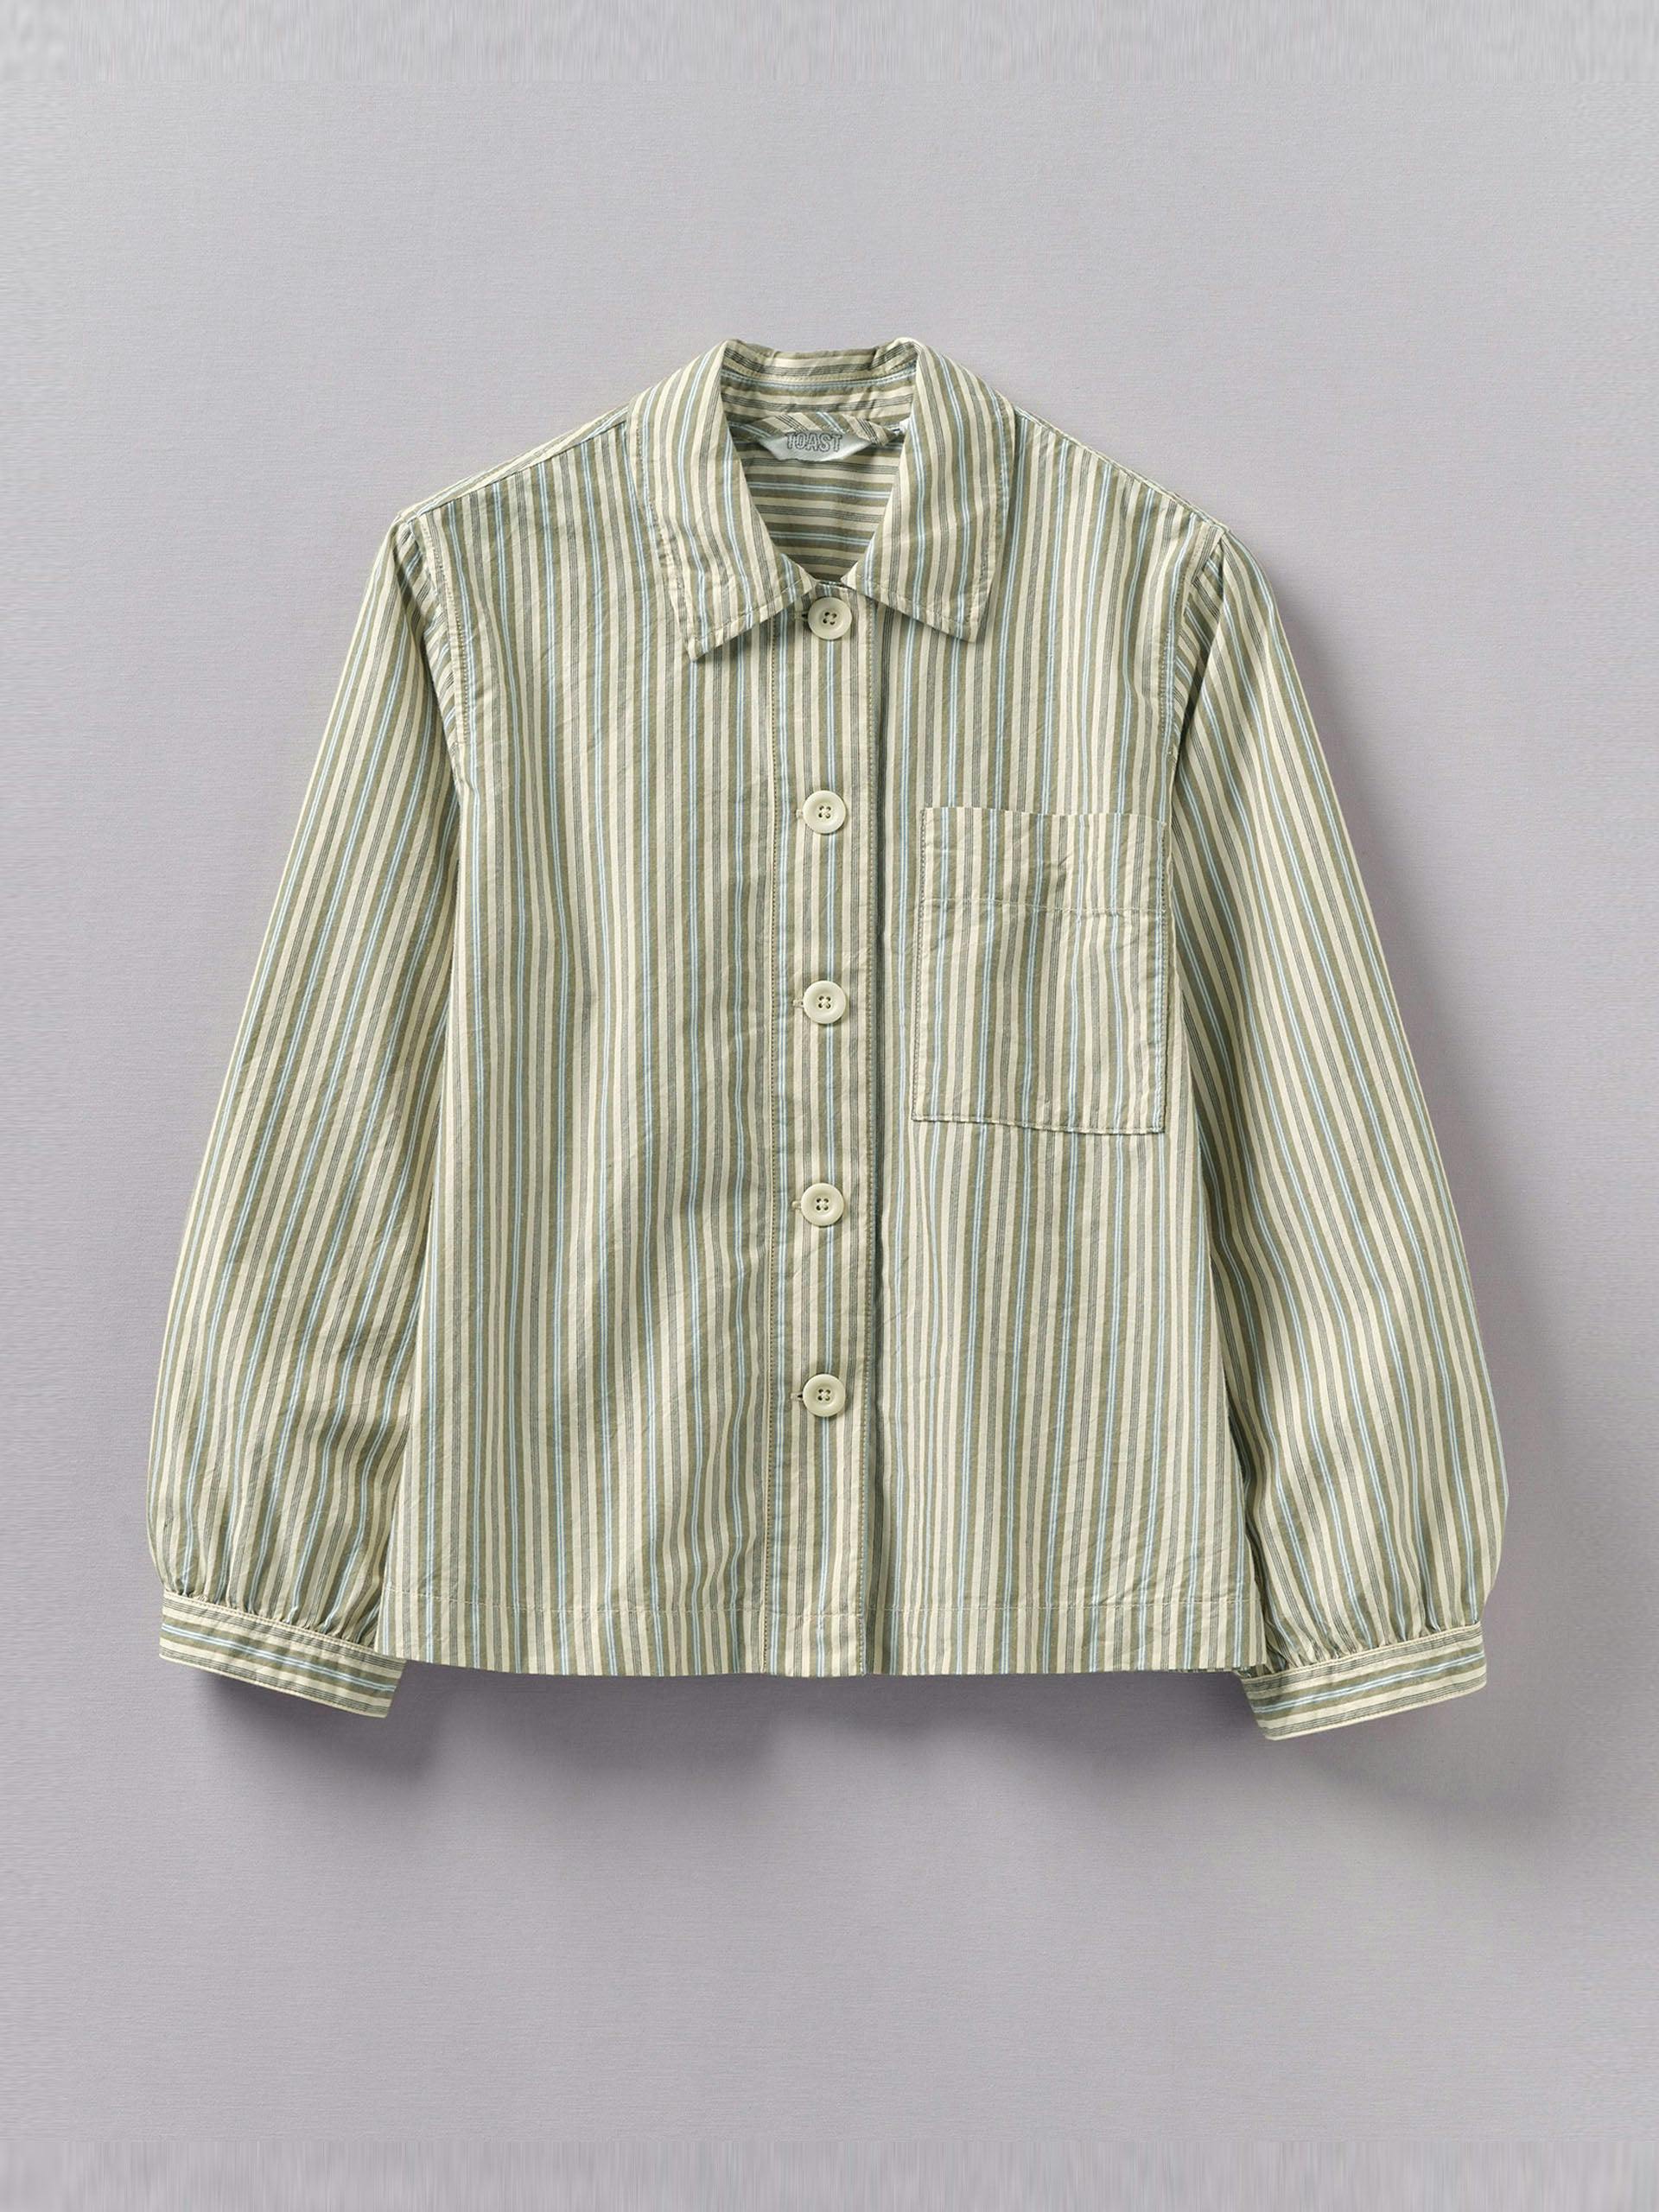 Raft stripe patch pocket cotton shirt